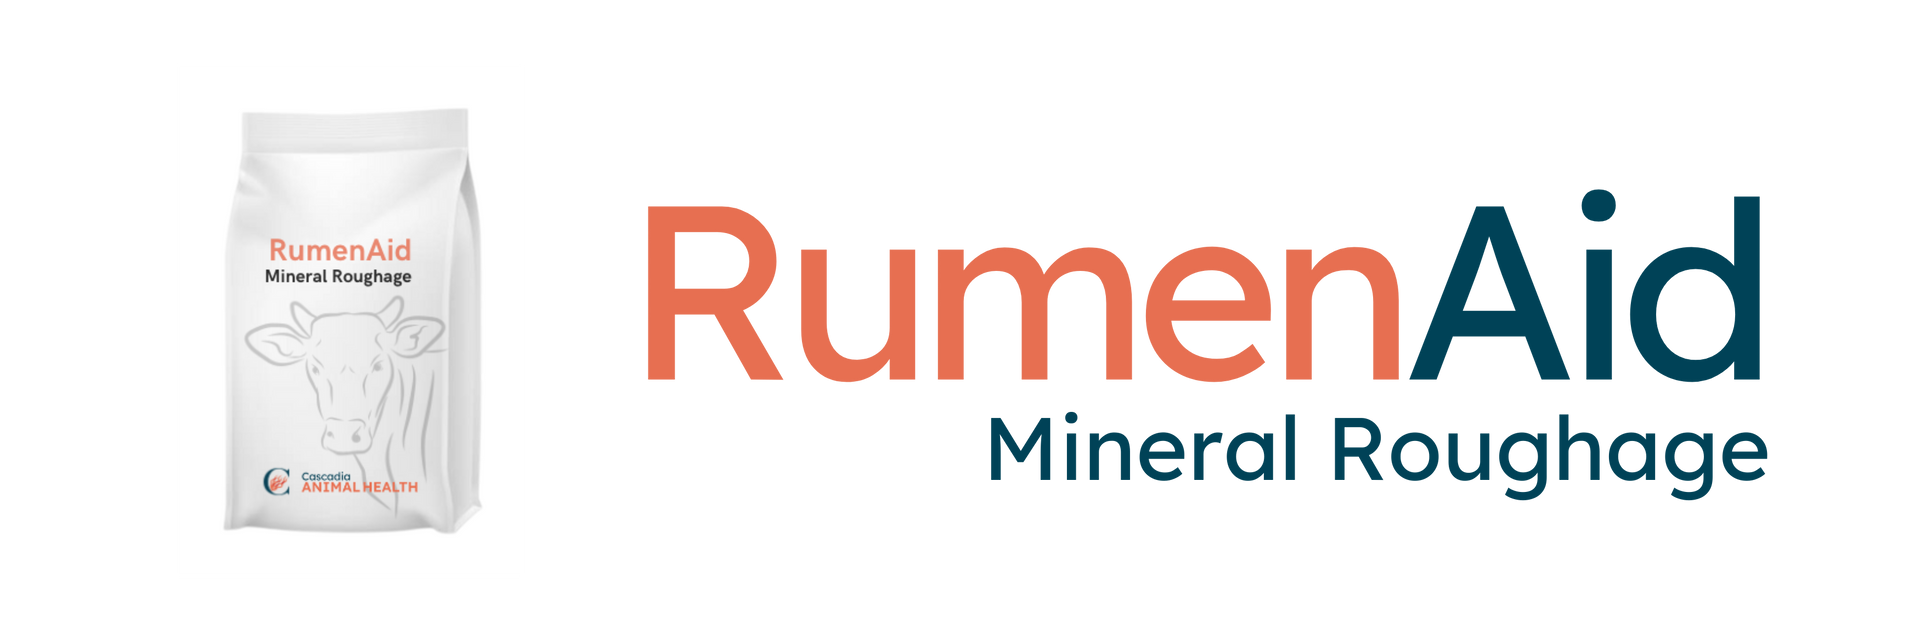 RumenAid Mineral Roughage